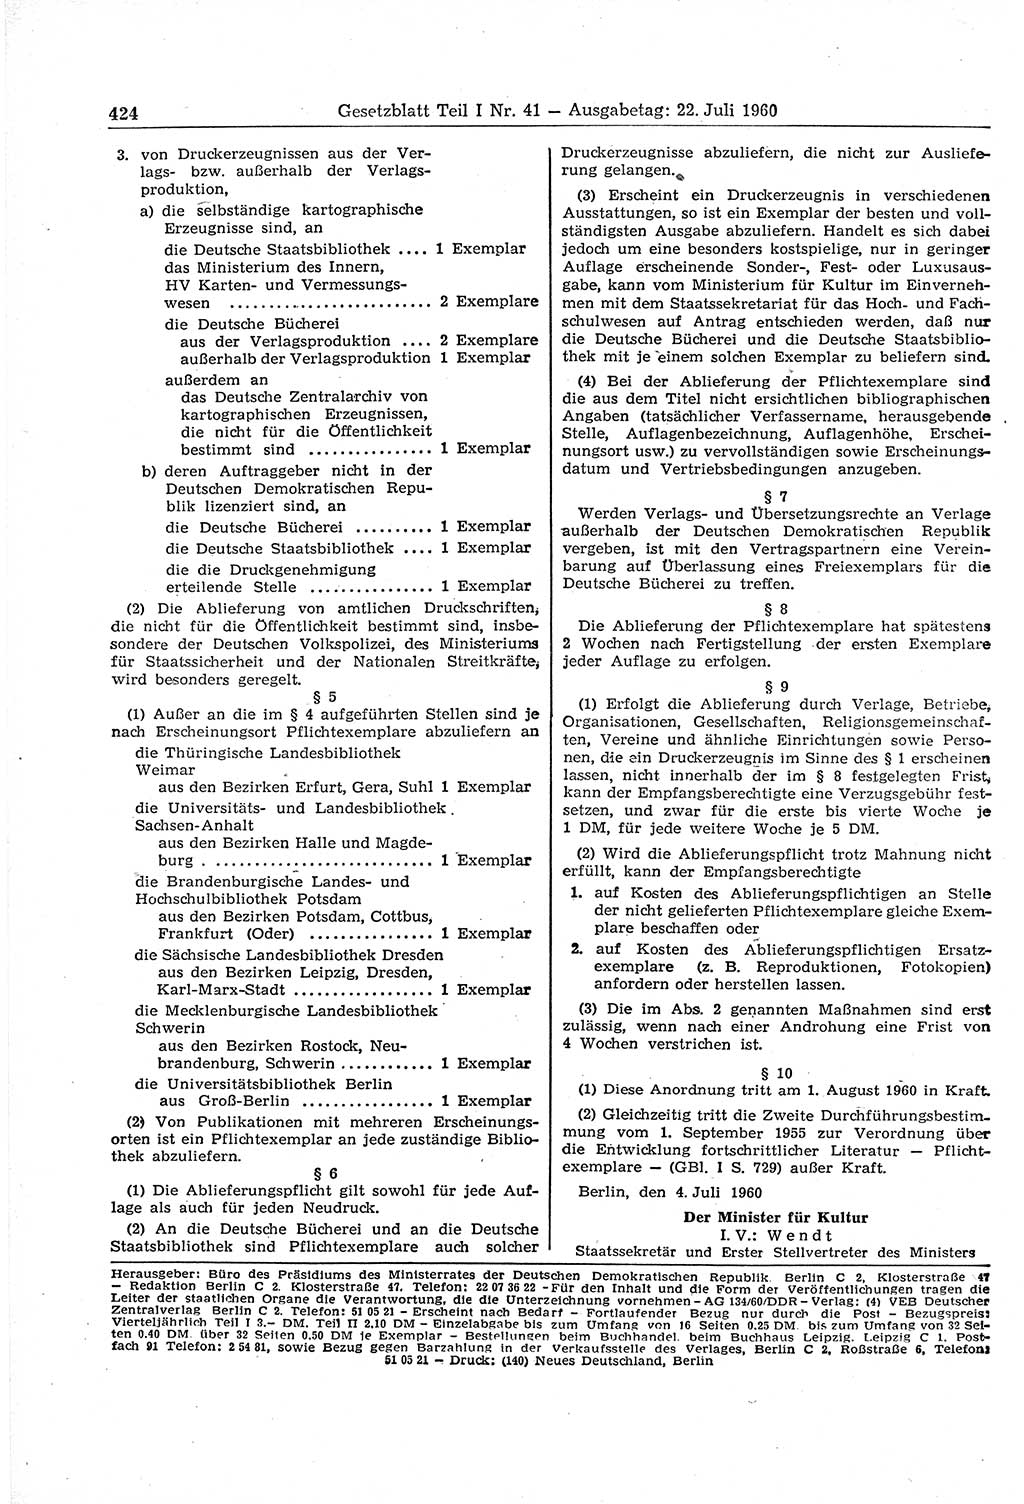 Gesetzblatt (GBl.) der Deutschen Demokratischen Republik (DDR) Teil Ⅰ 1960, Seite 424 (GBl. DDR Ⅰ 1960, S. 424)